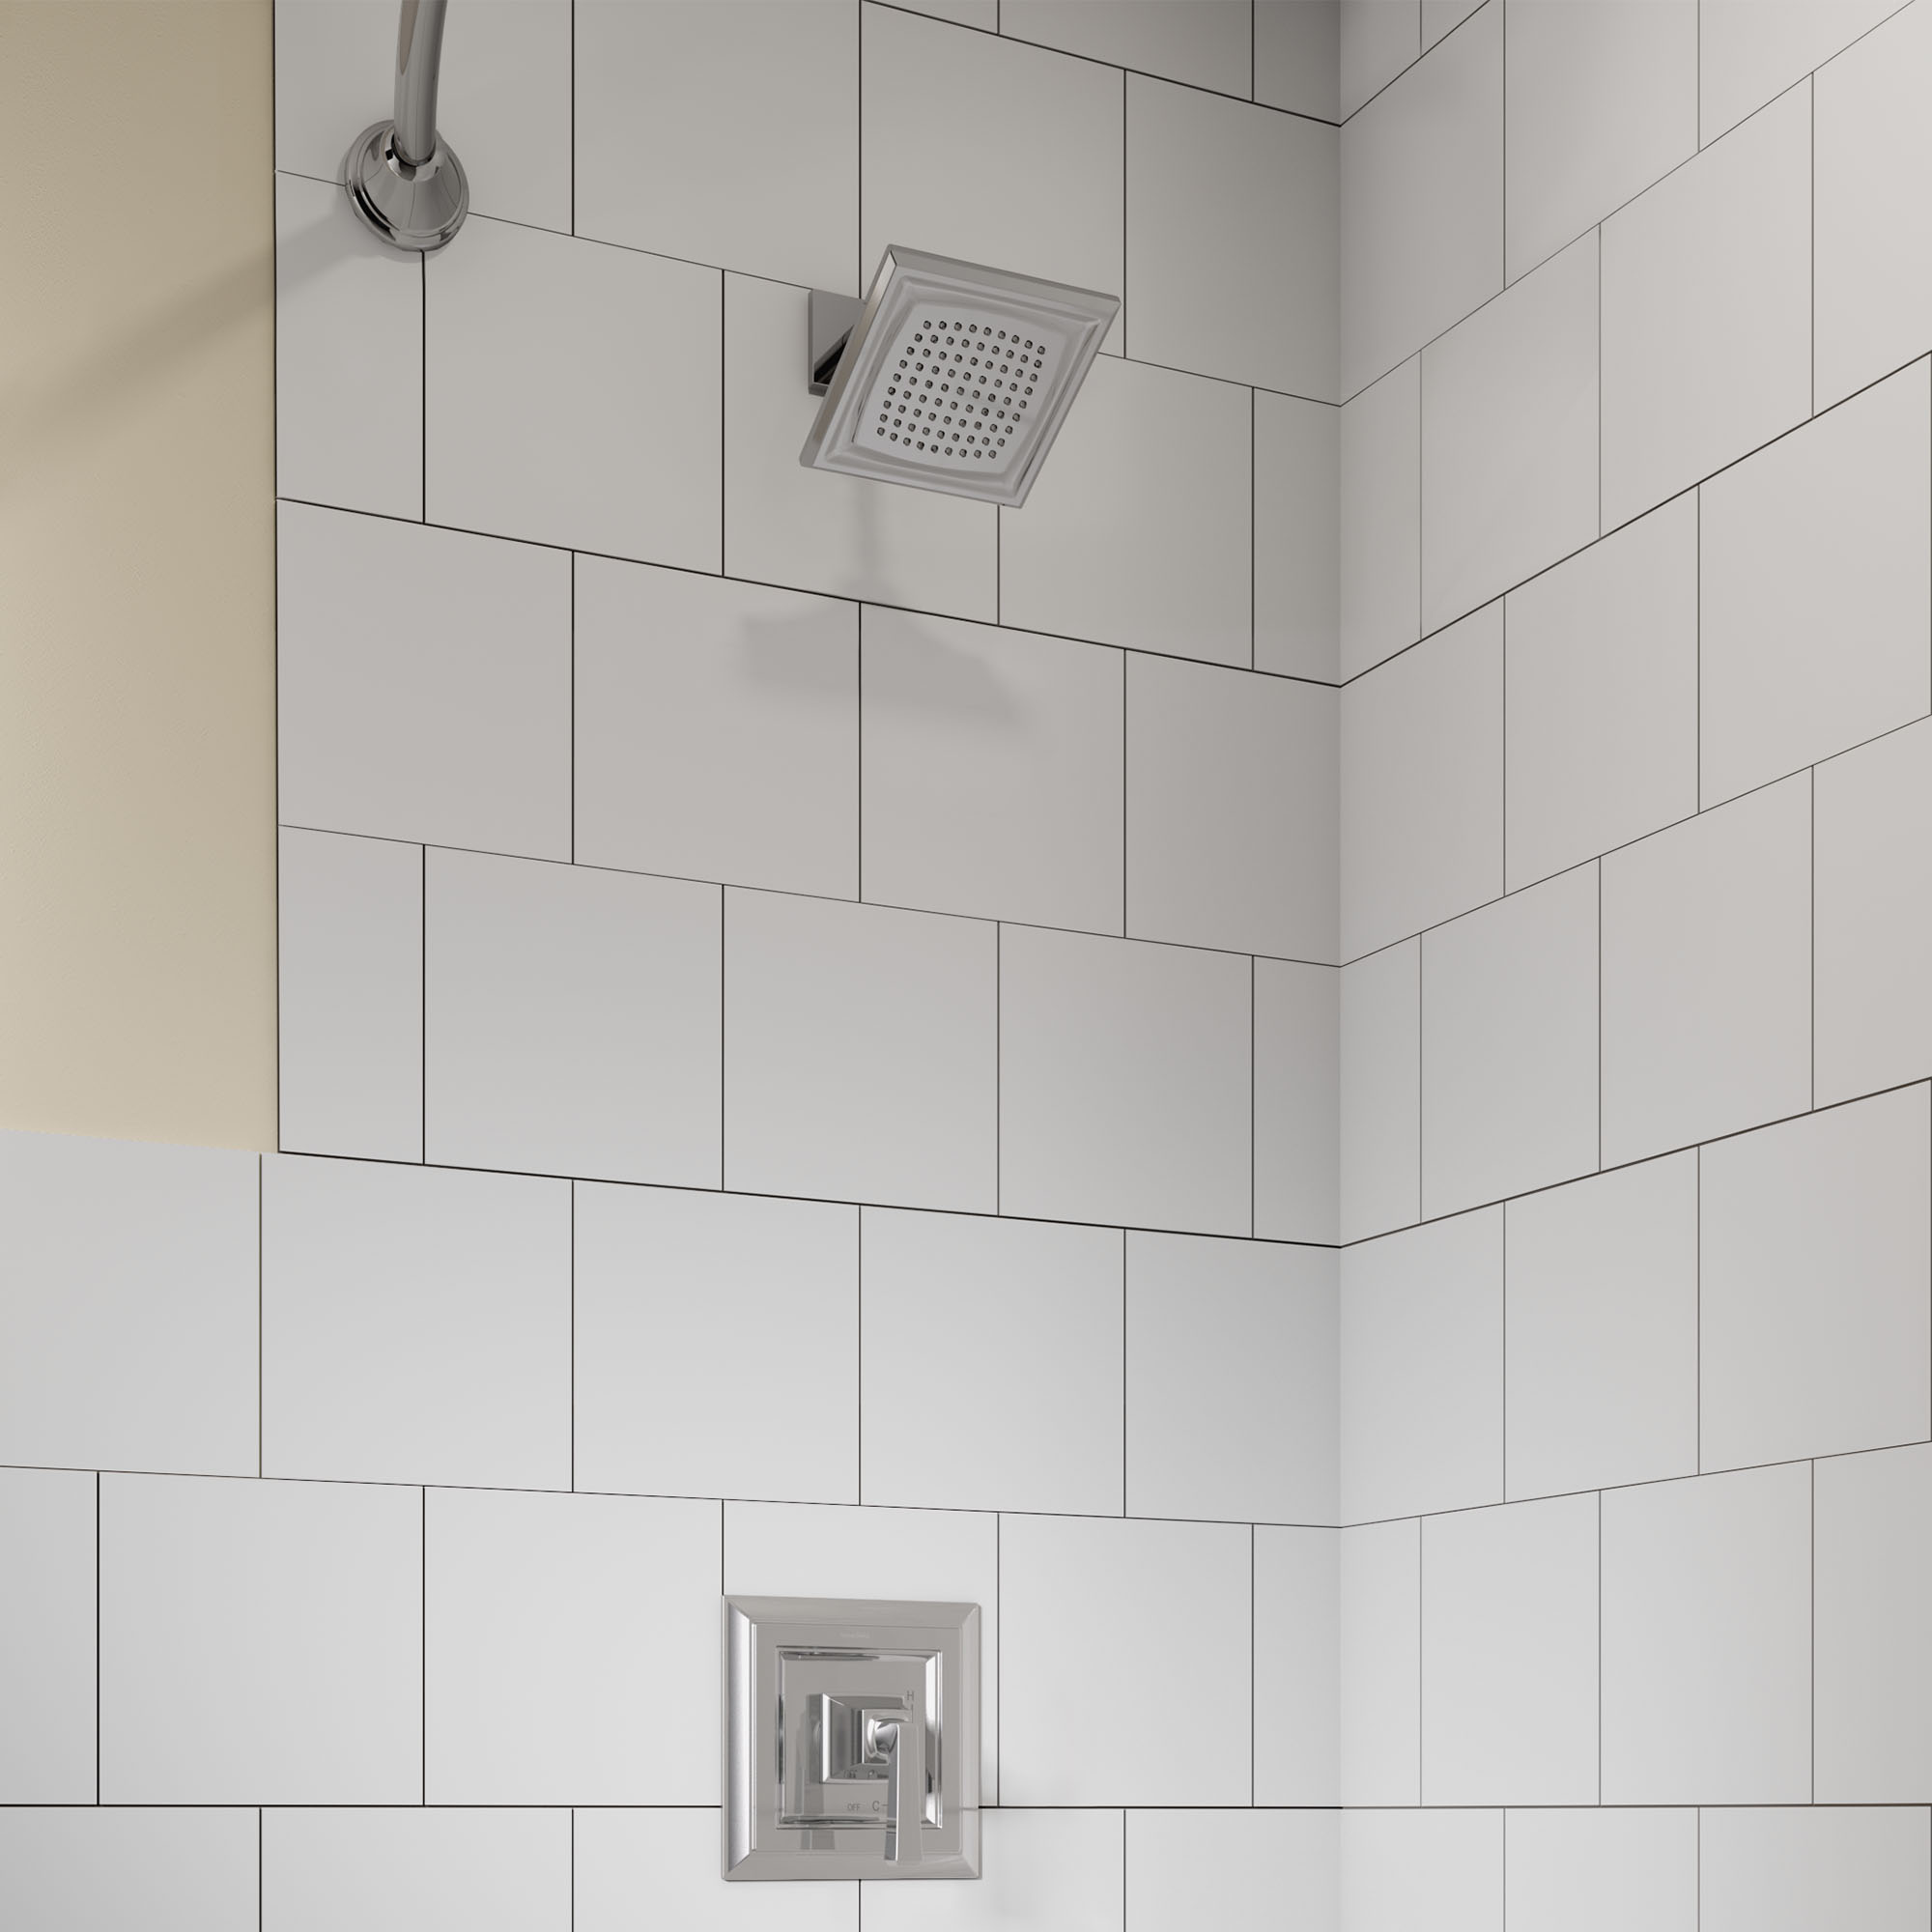 Town SquareMC S - Ensemble de robinetterie pour douche 1,75 gpm/6,8 L/min incluant une pomme de douche à économie d'eau, une cartouche à pression équilibrée en double céramique et une poignée à levier